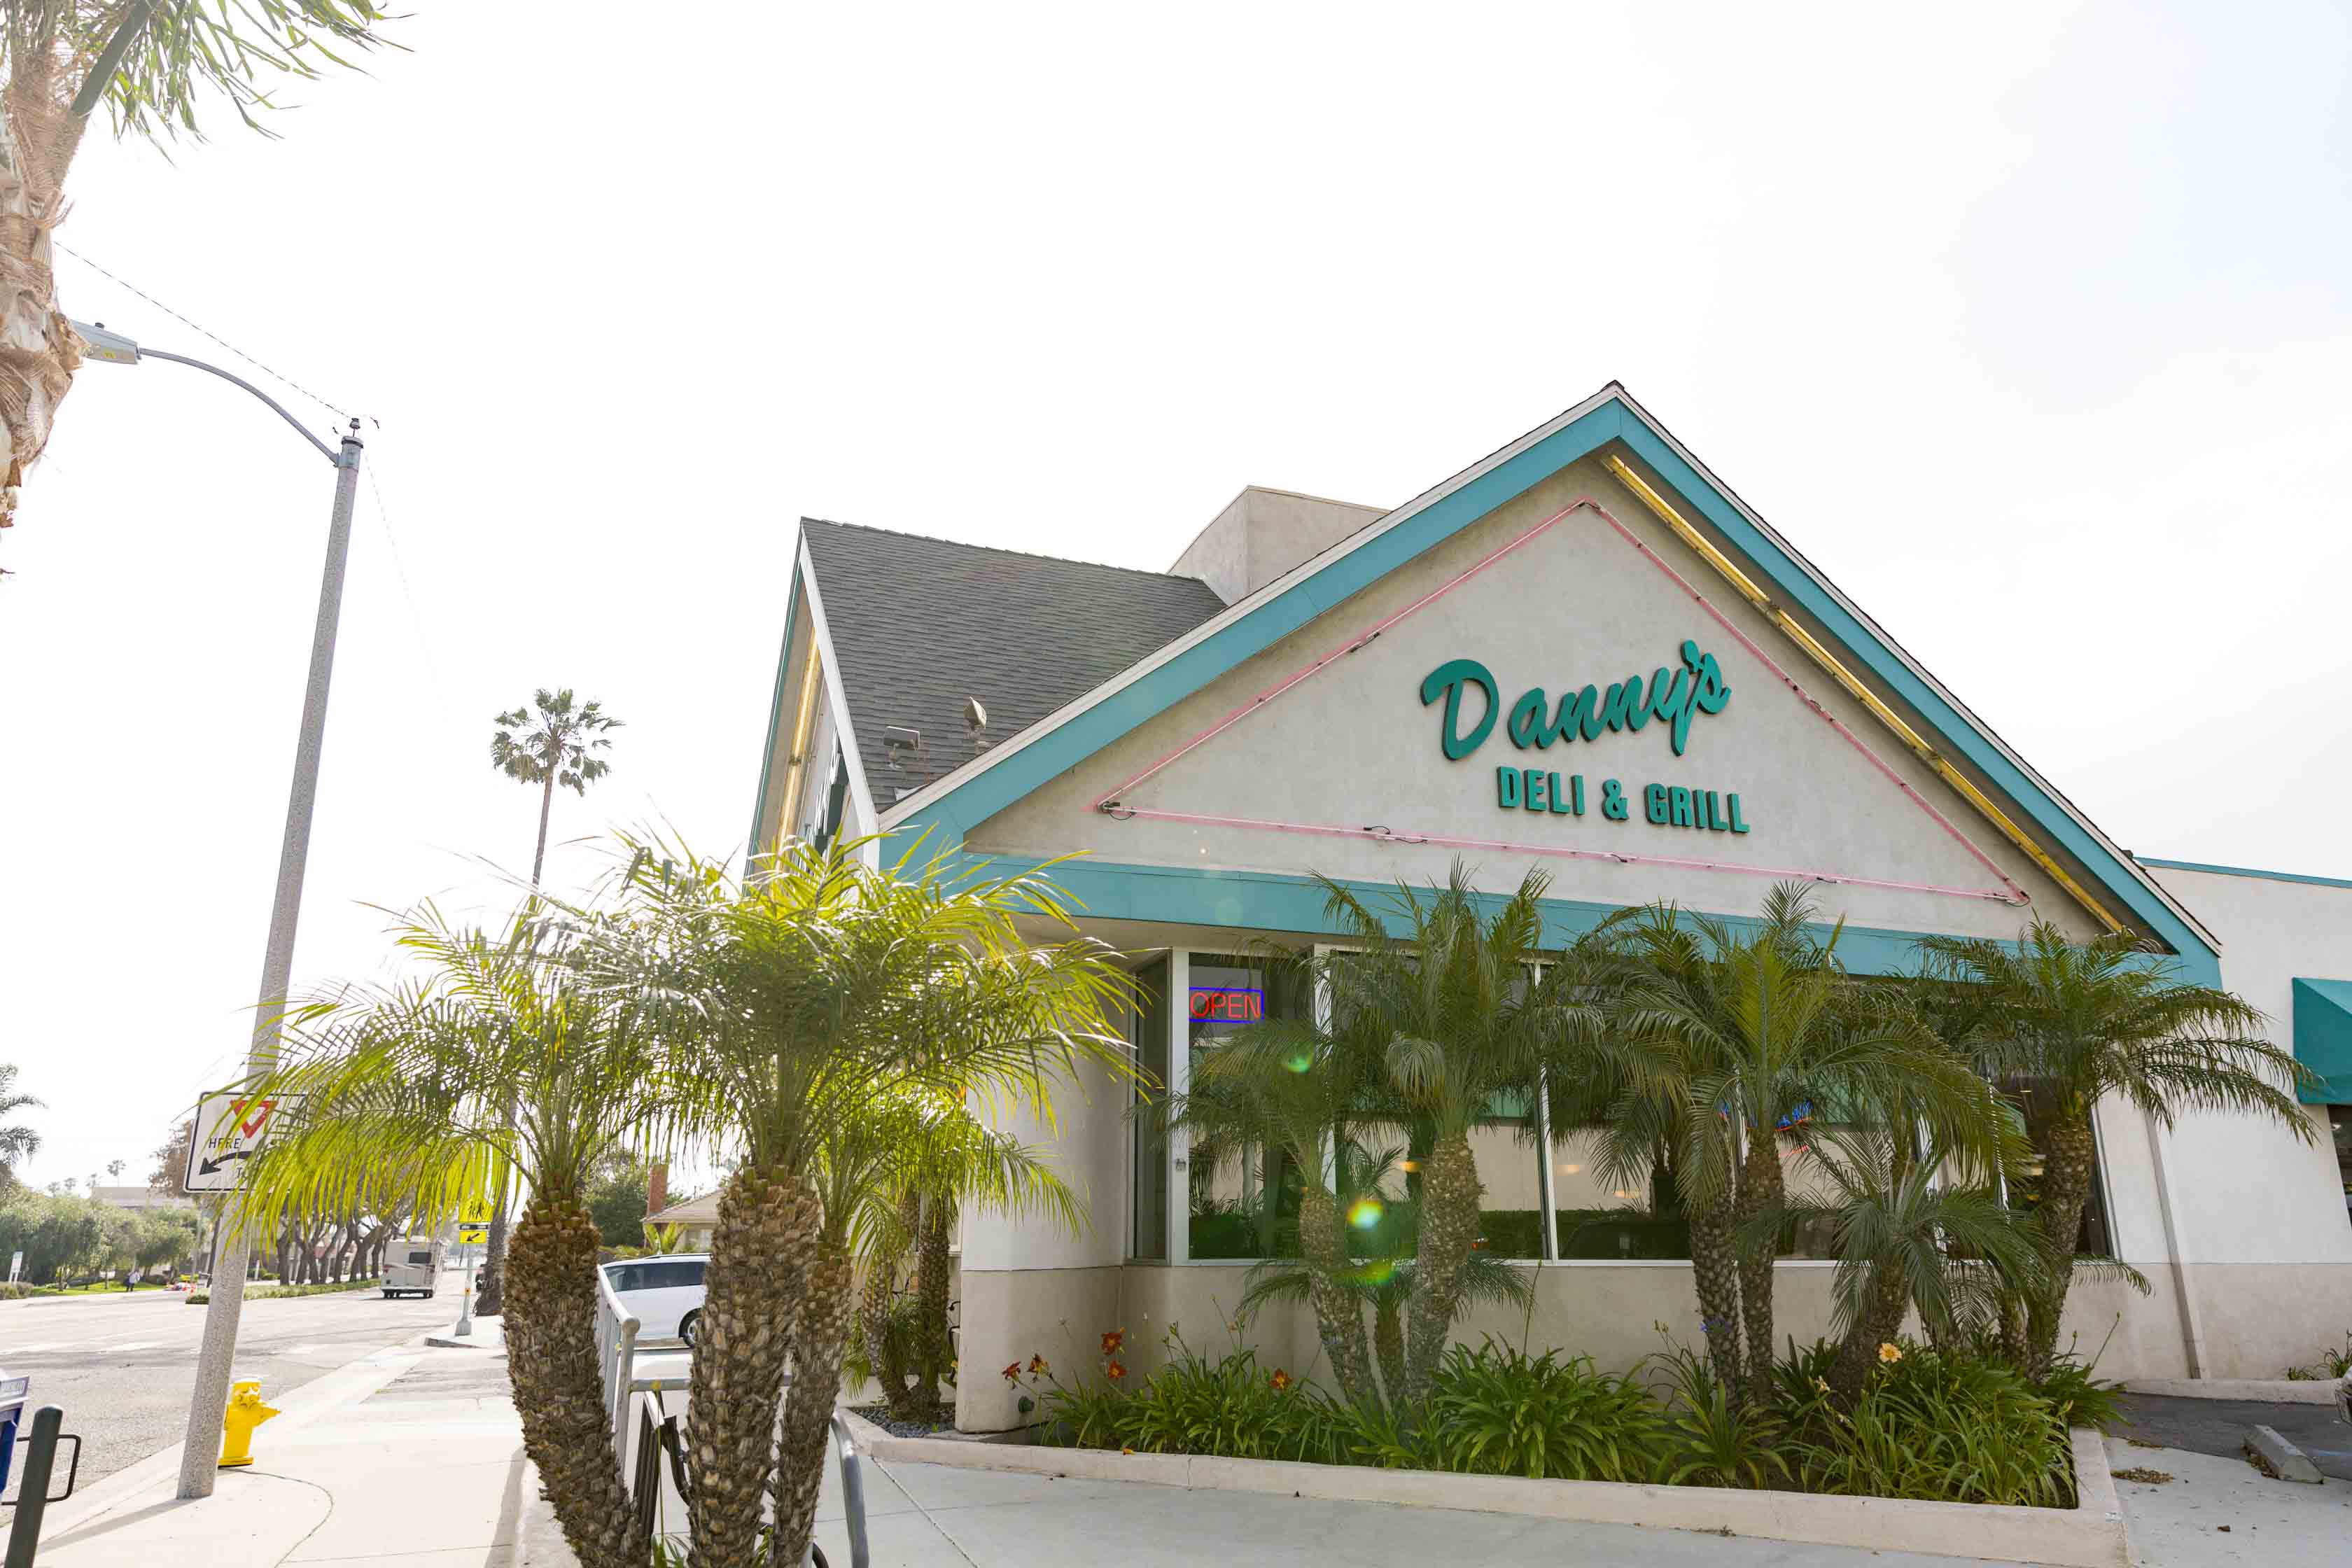 Denny's - Home - Ventura, California - Menu, prices, restaurant